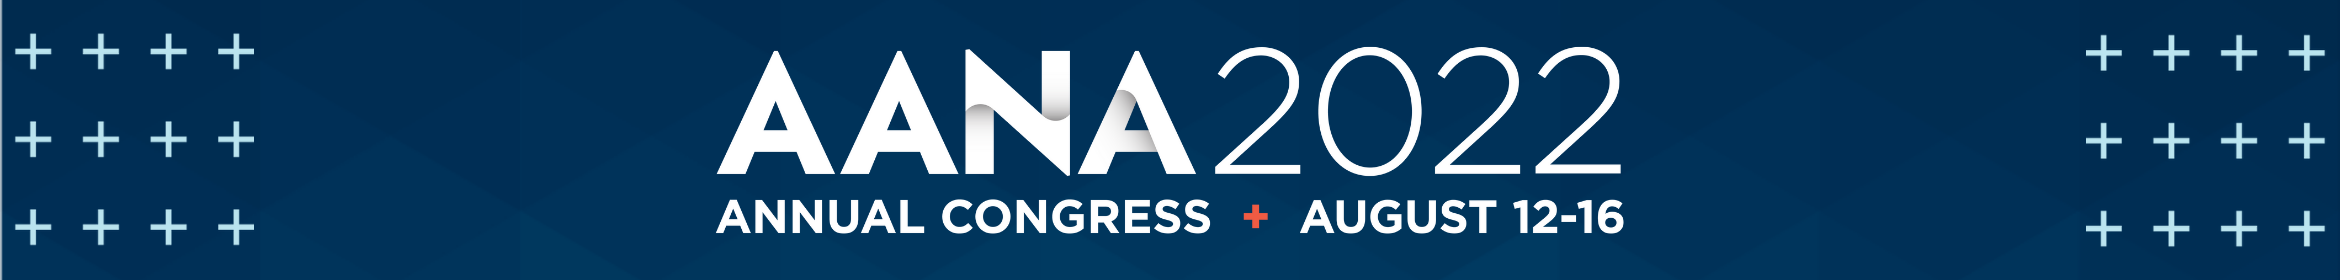 2022 Annual Congress Main banner